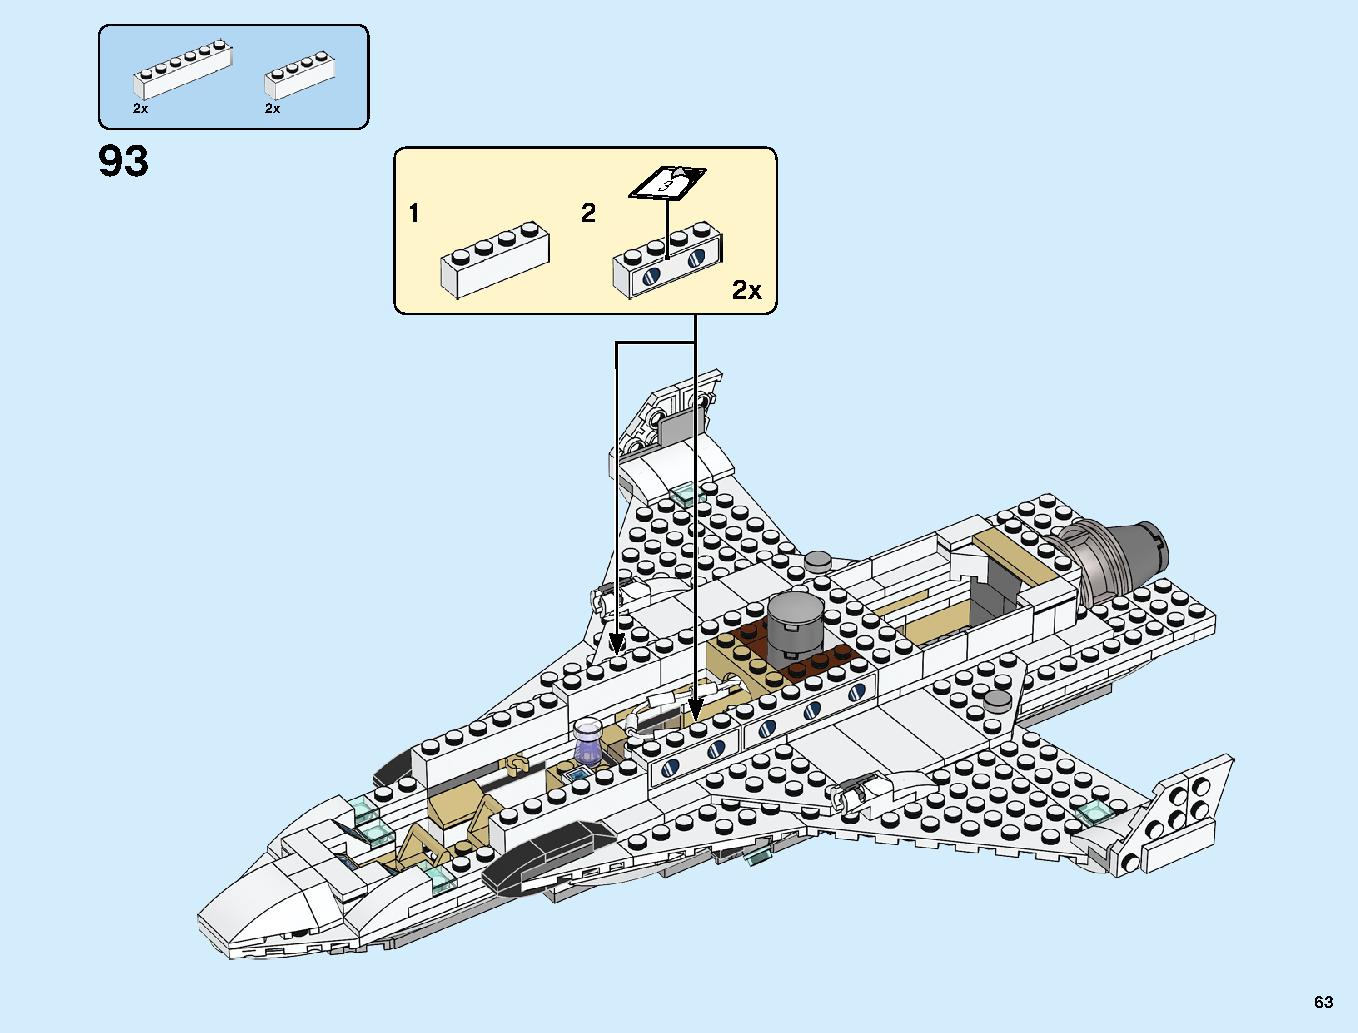 スタークジェットとドローン攻撃 76130 レゴの商品情報 レゴの説明書・組立方法 63 page